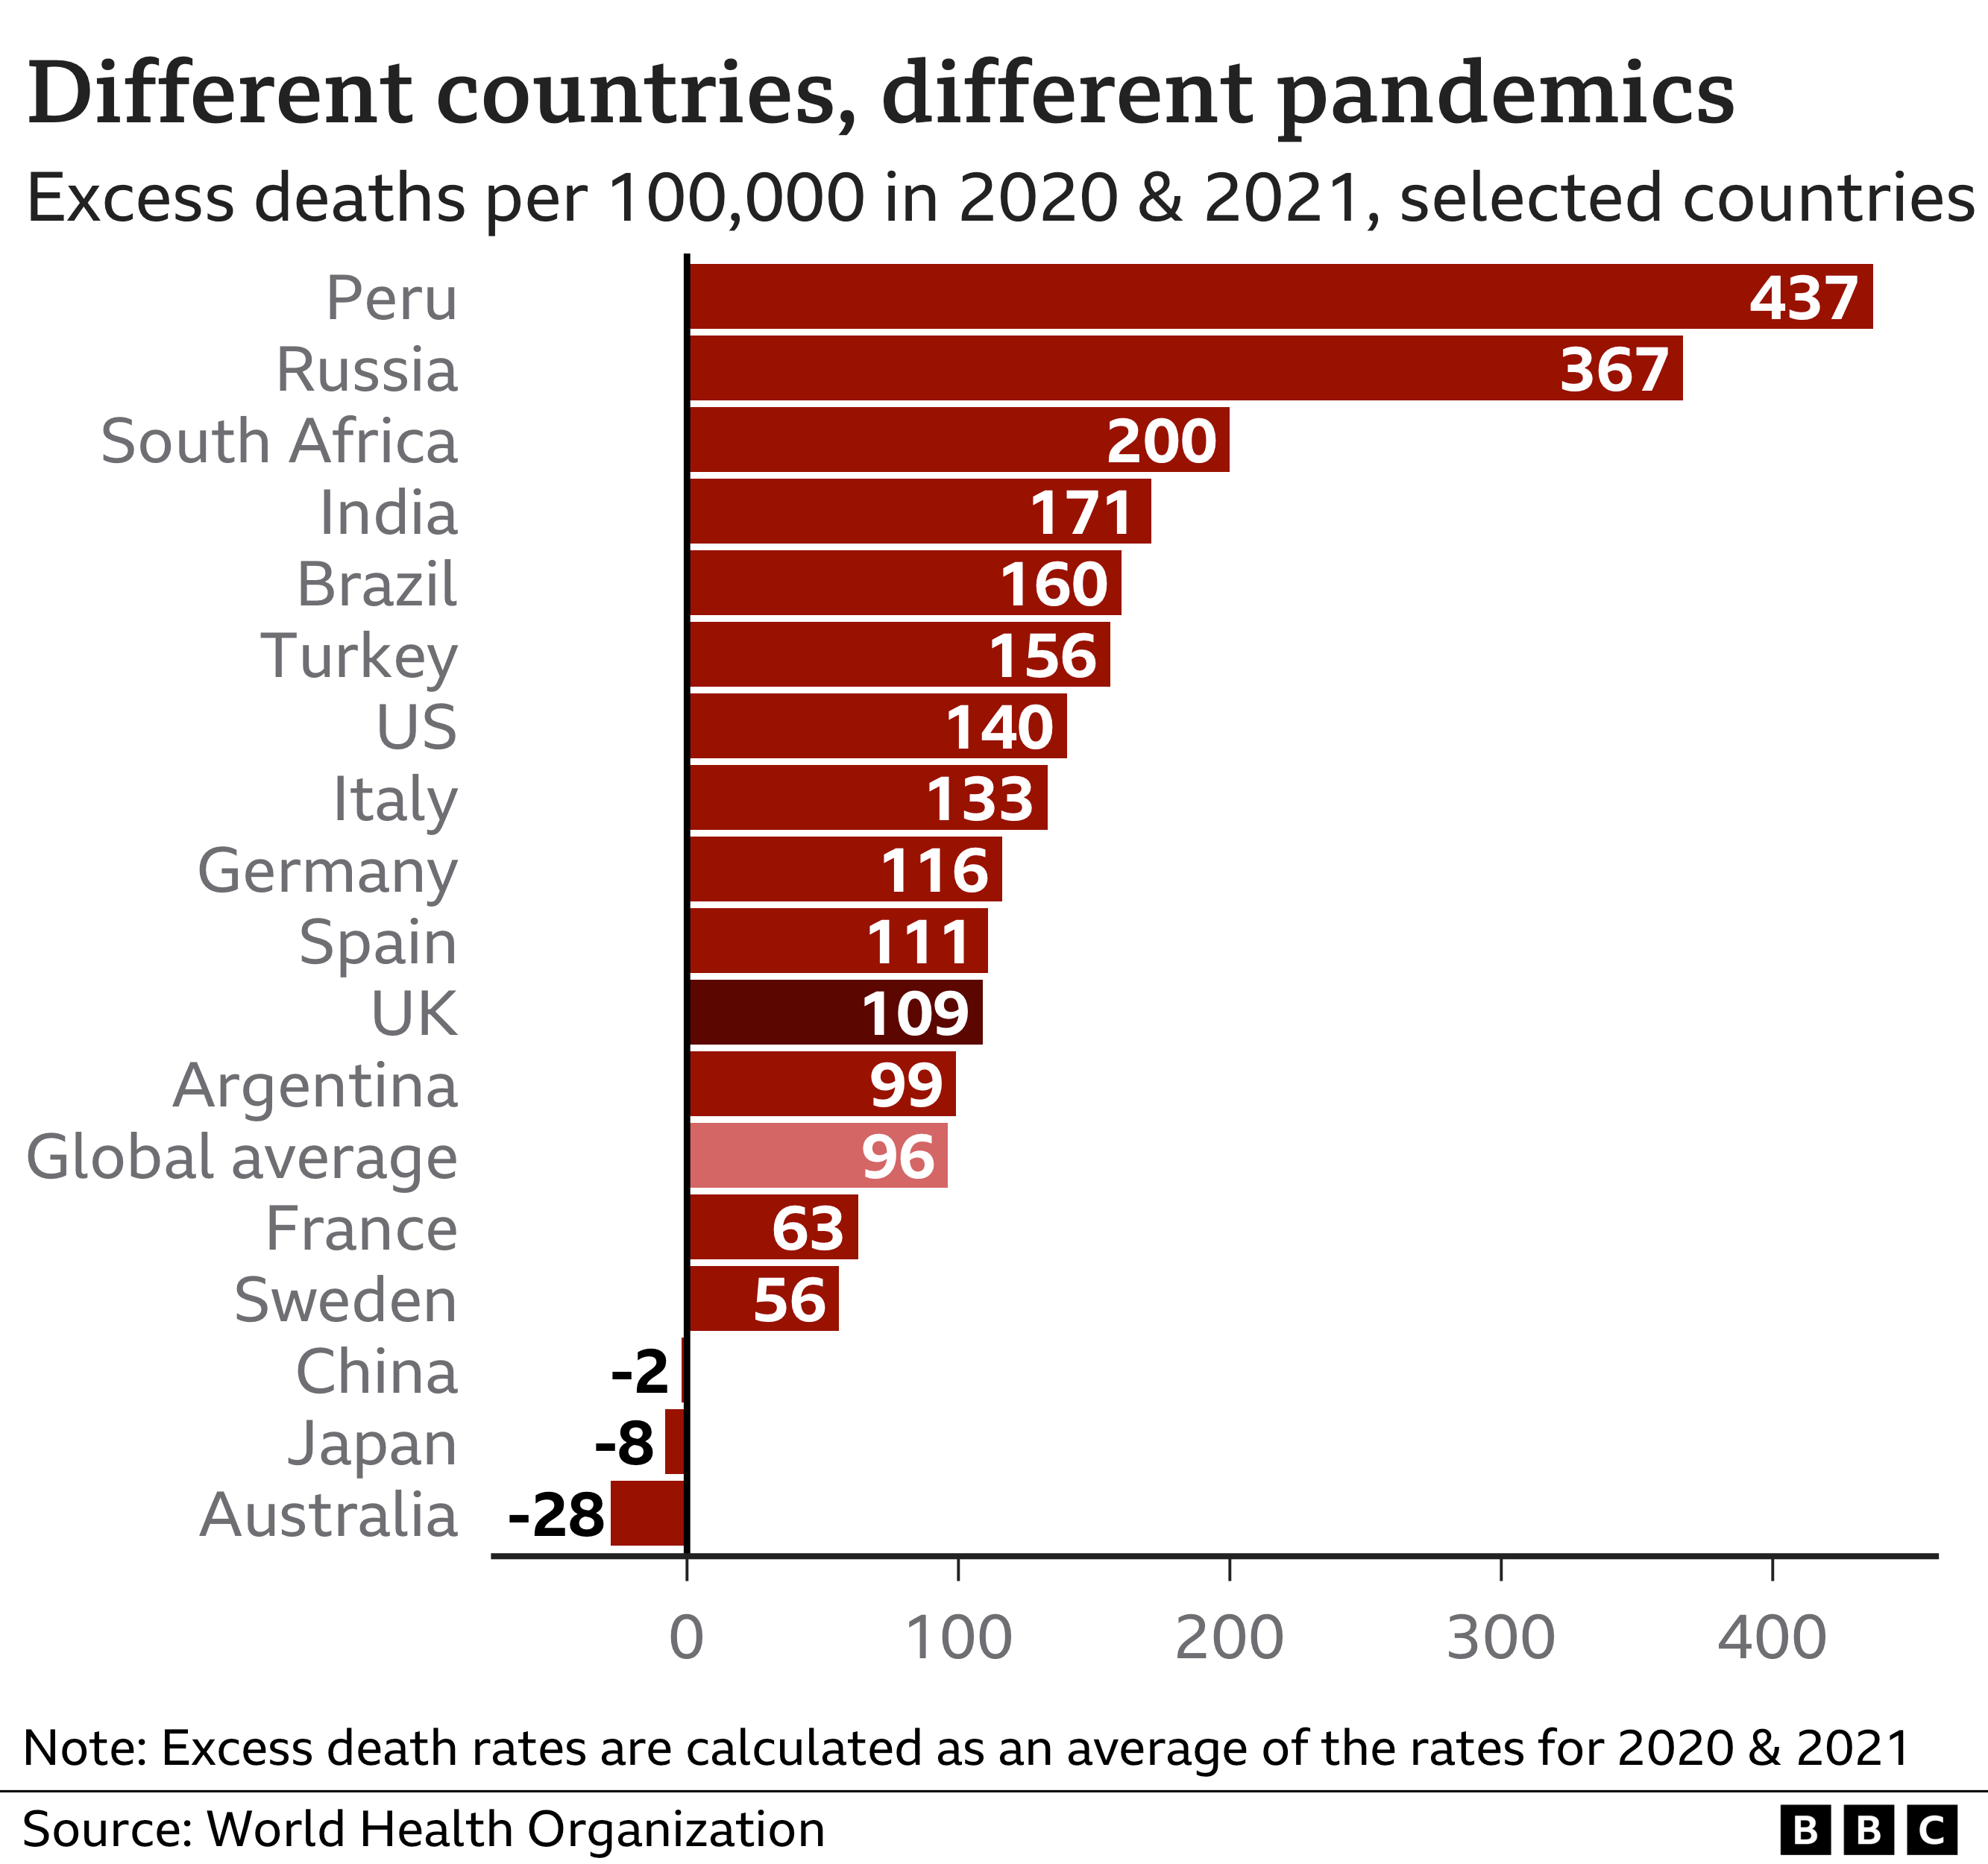 График, показывающий уровень избыточной смертности по странам на основе оценок ВОЗ, с Перу на первом месте с 437, Россией с 367 и Южной Африкой с 200. Среднее глобальное значение составляет 96, а Китай, Япония и Австралия показывают отрицательную избыточную смертность